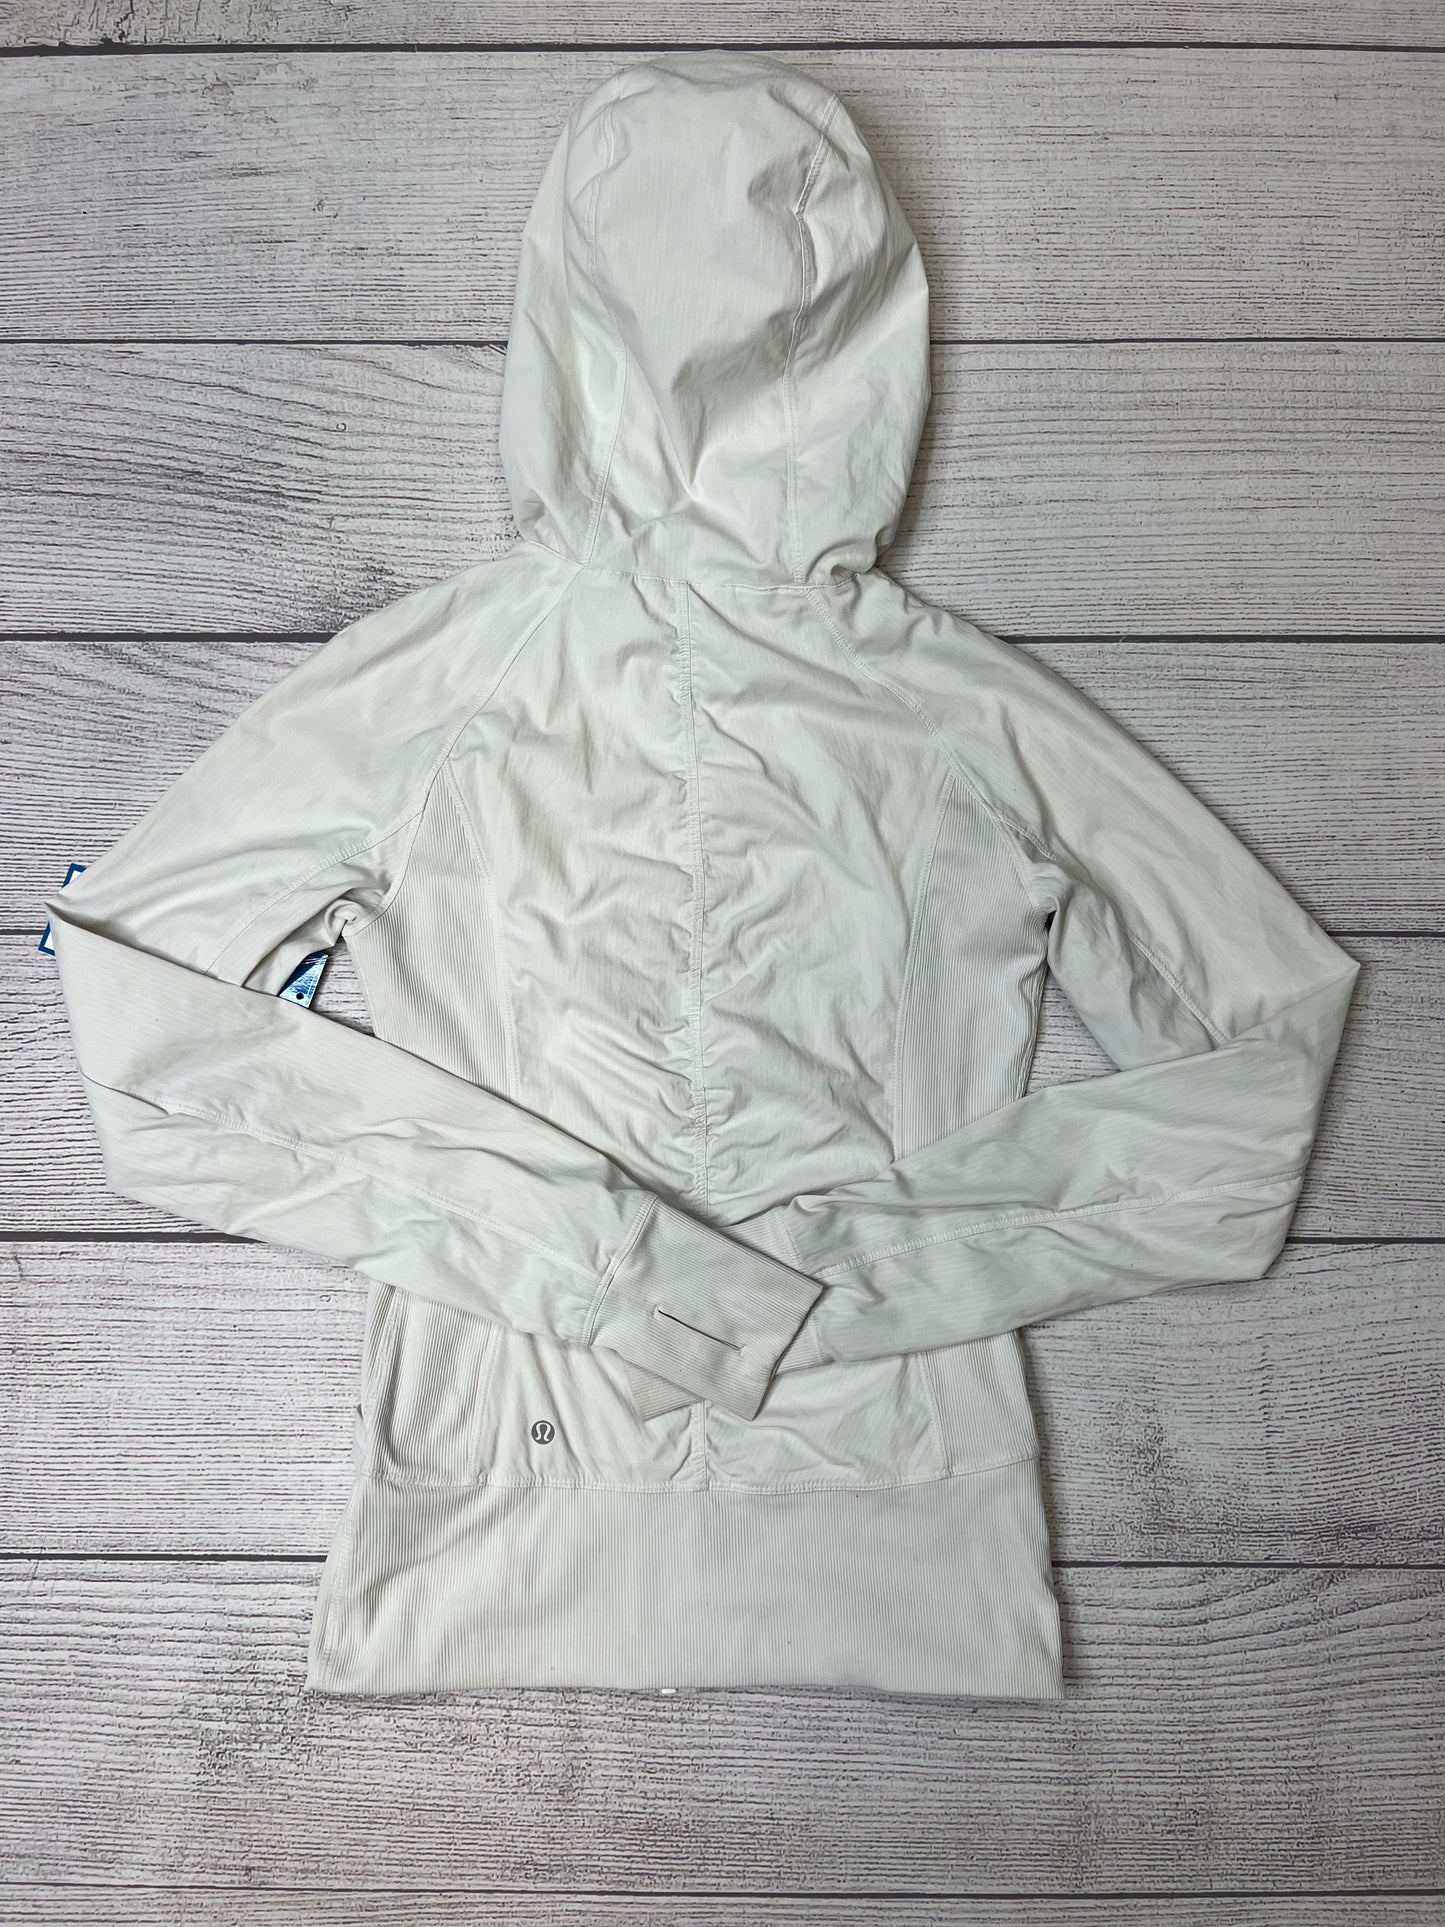 White Athletic Jacket Lululemon, Size 6